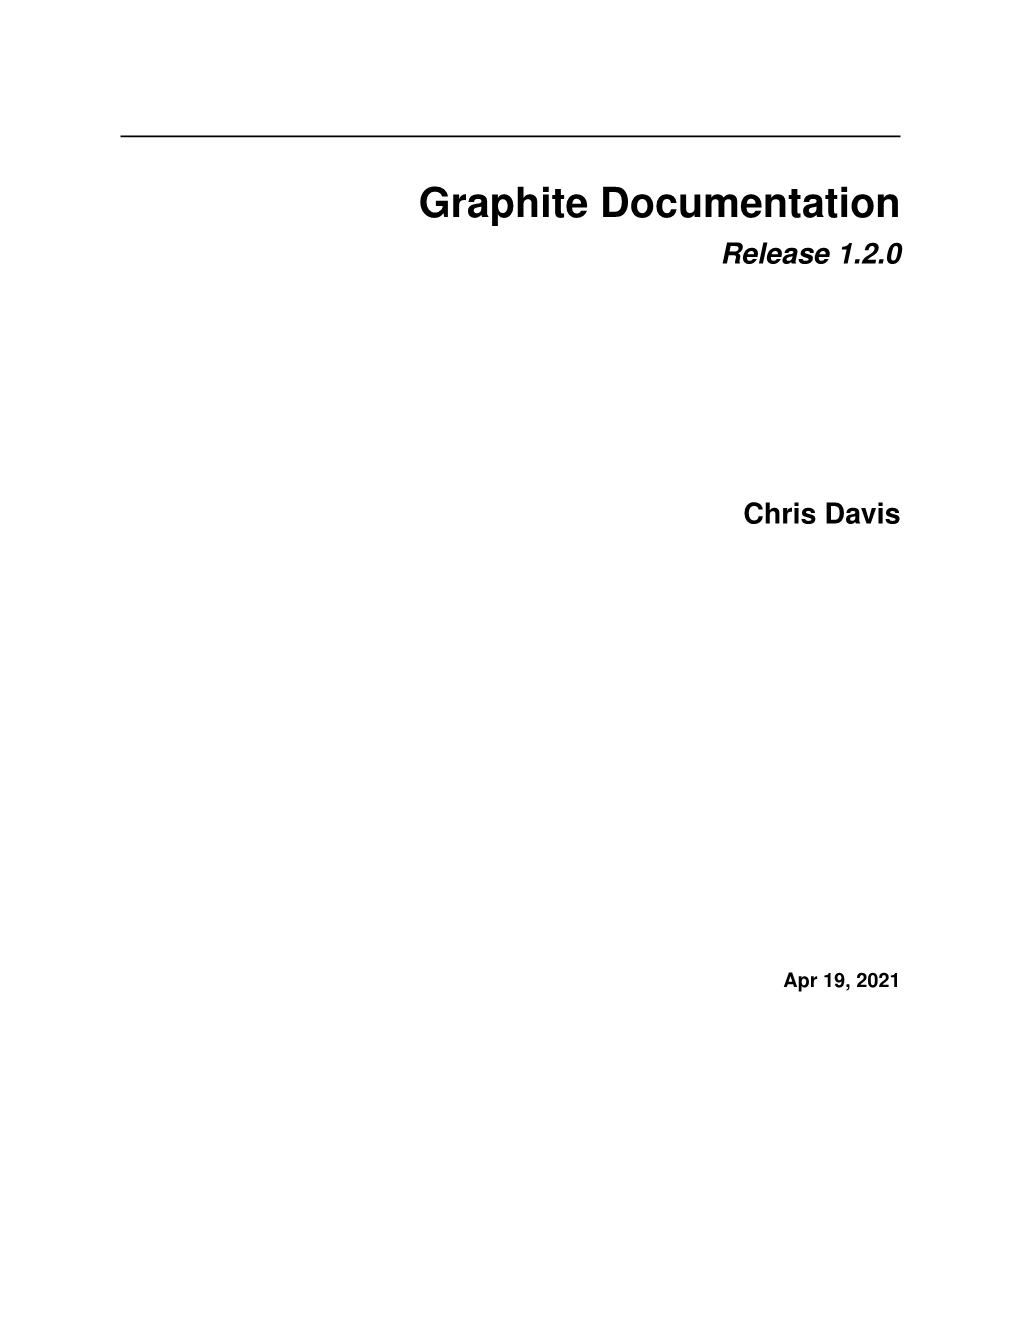 Graphite Documentation Release 1.2.0